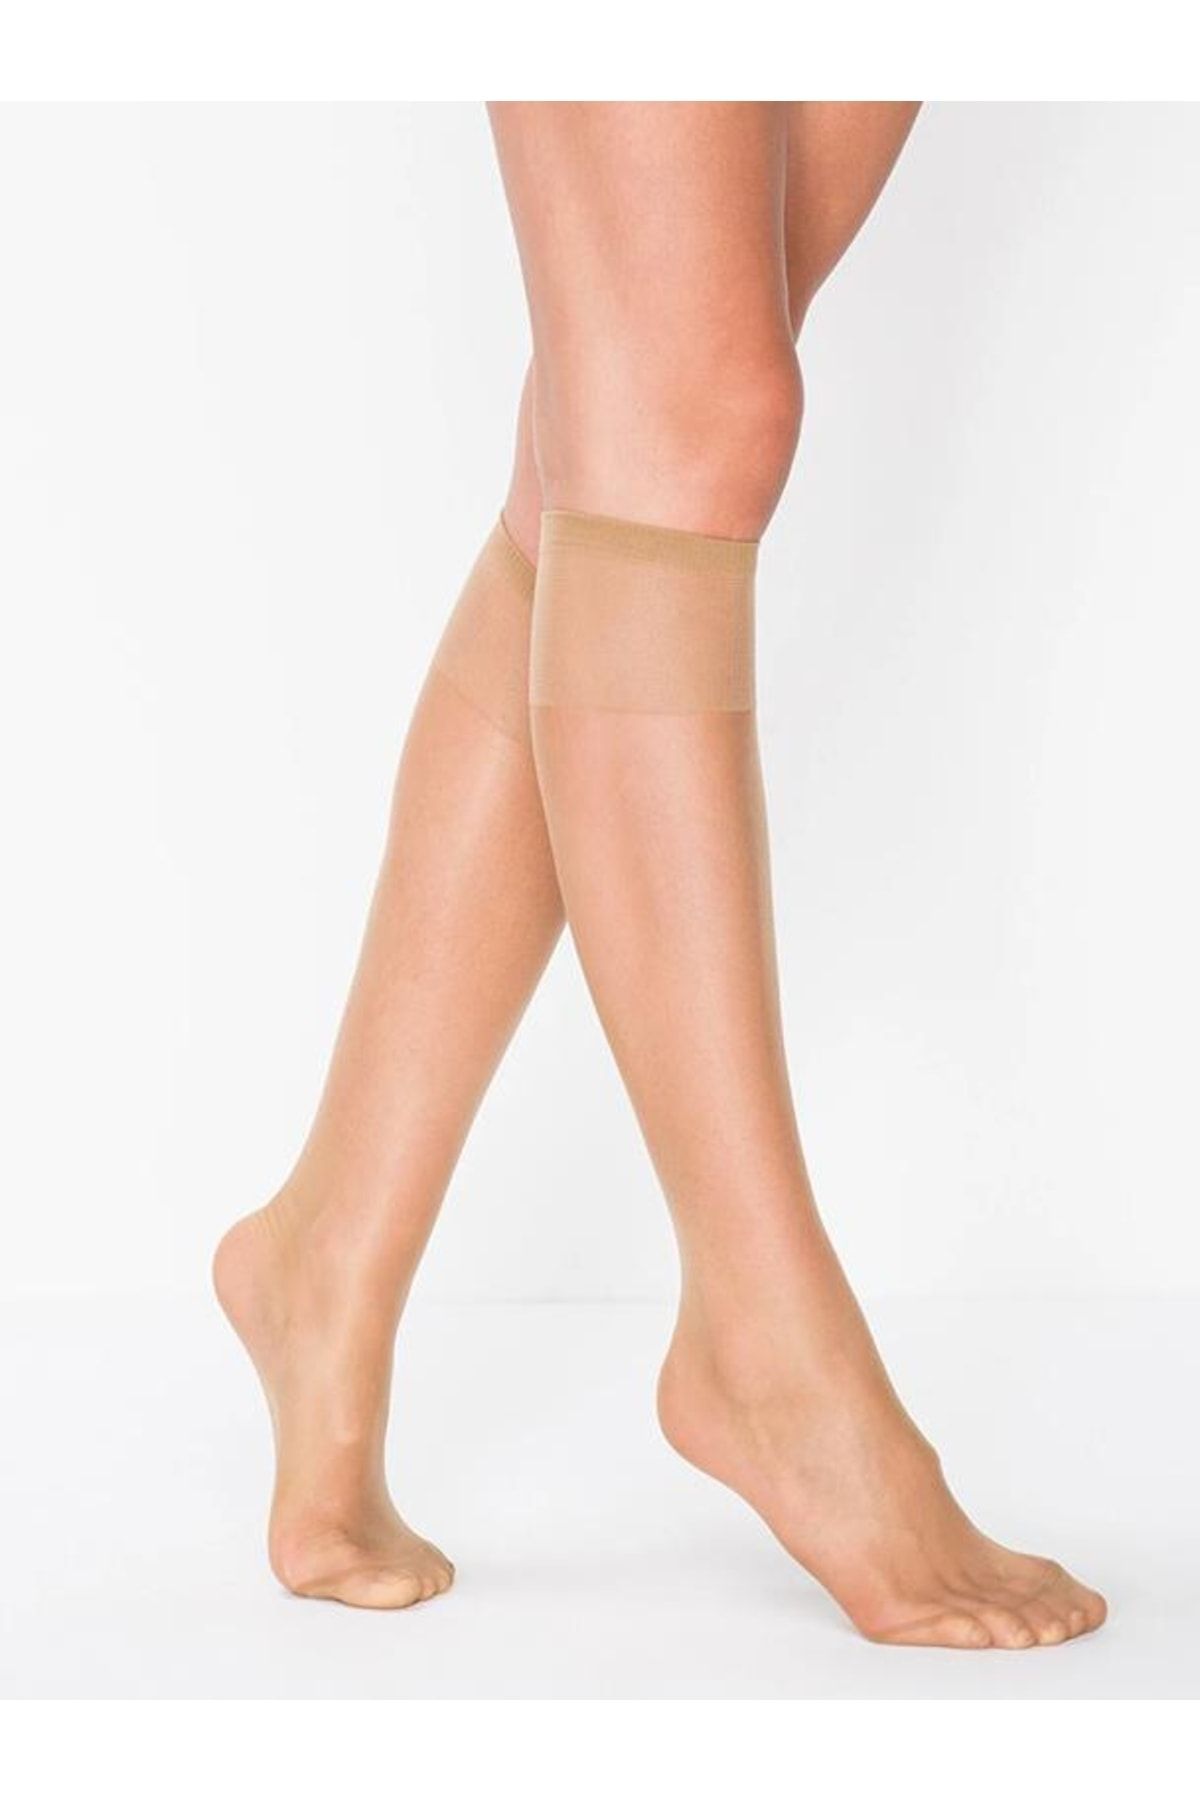 Penti Süper Diz Altı Pantolon Çorabı 38 Bronz 6 Adet Dizaltı